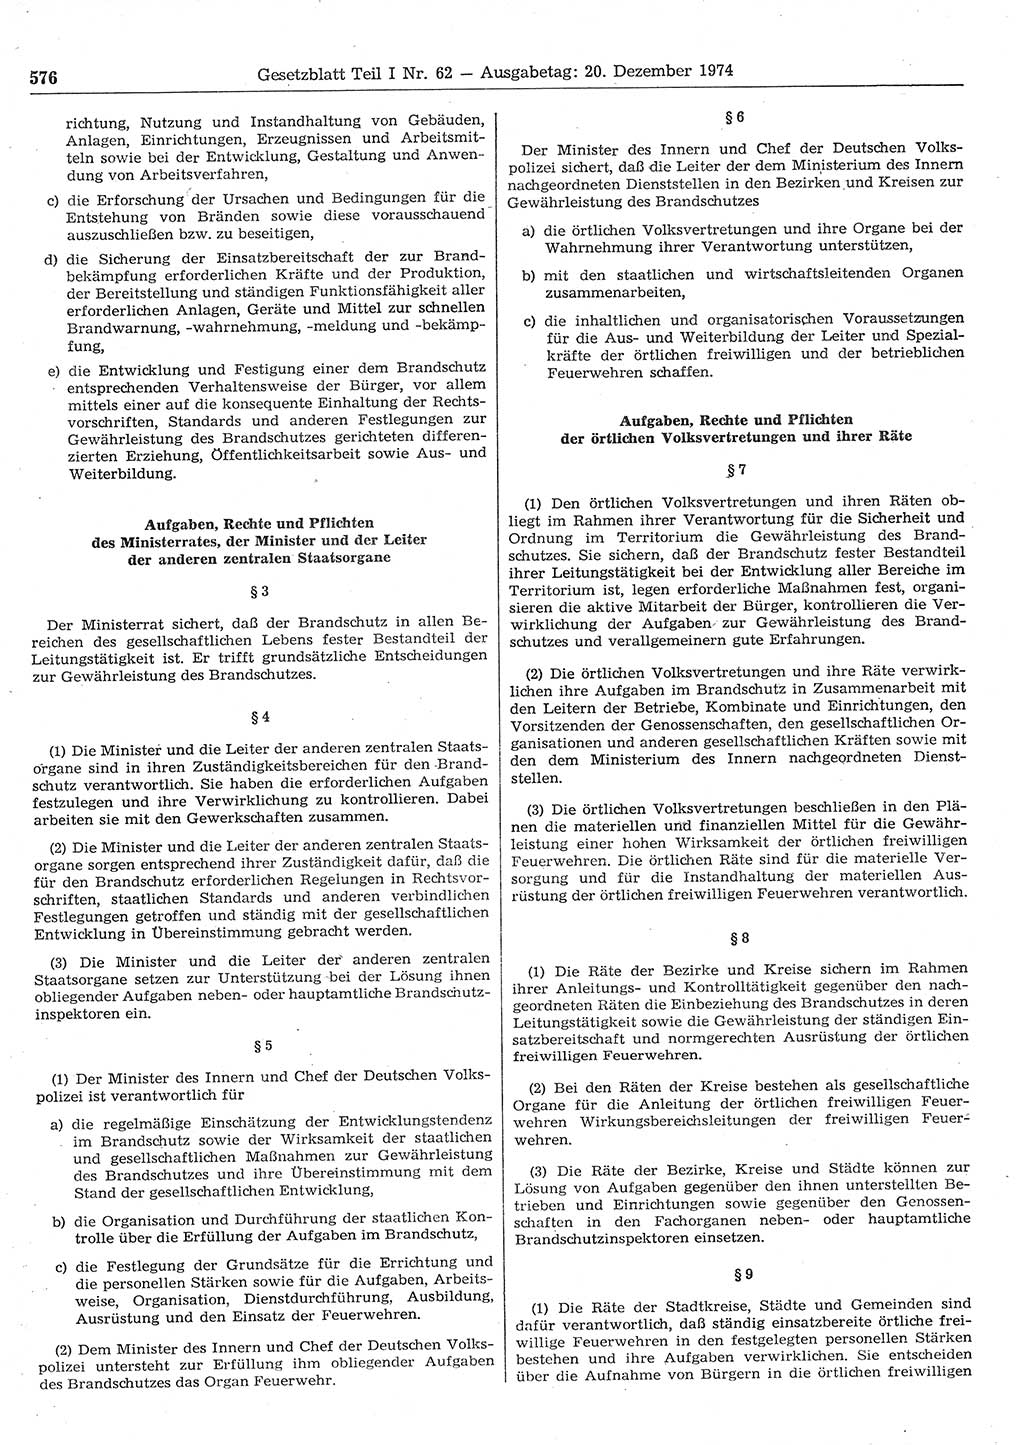 Gesetzblatt (GBl.) der Deutschen Demokratischen Republik (DDR) Teil Ⅰ 1974, Seite 576 (GBl. DDR Ⅰ 1974, S. 576)